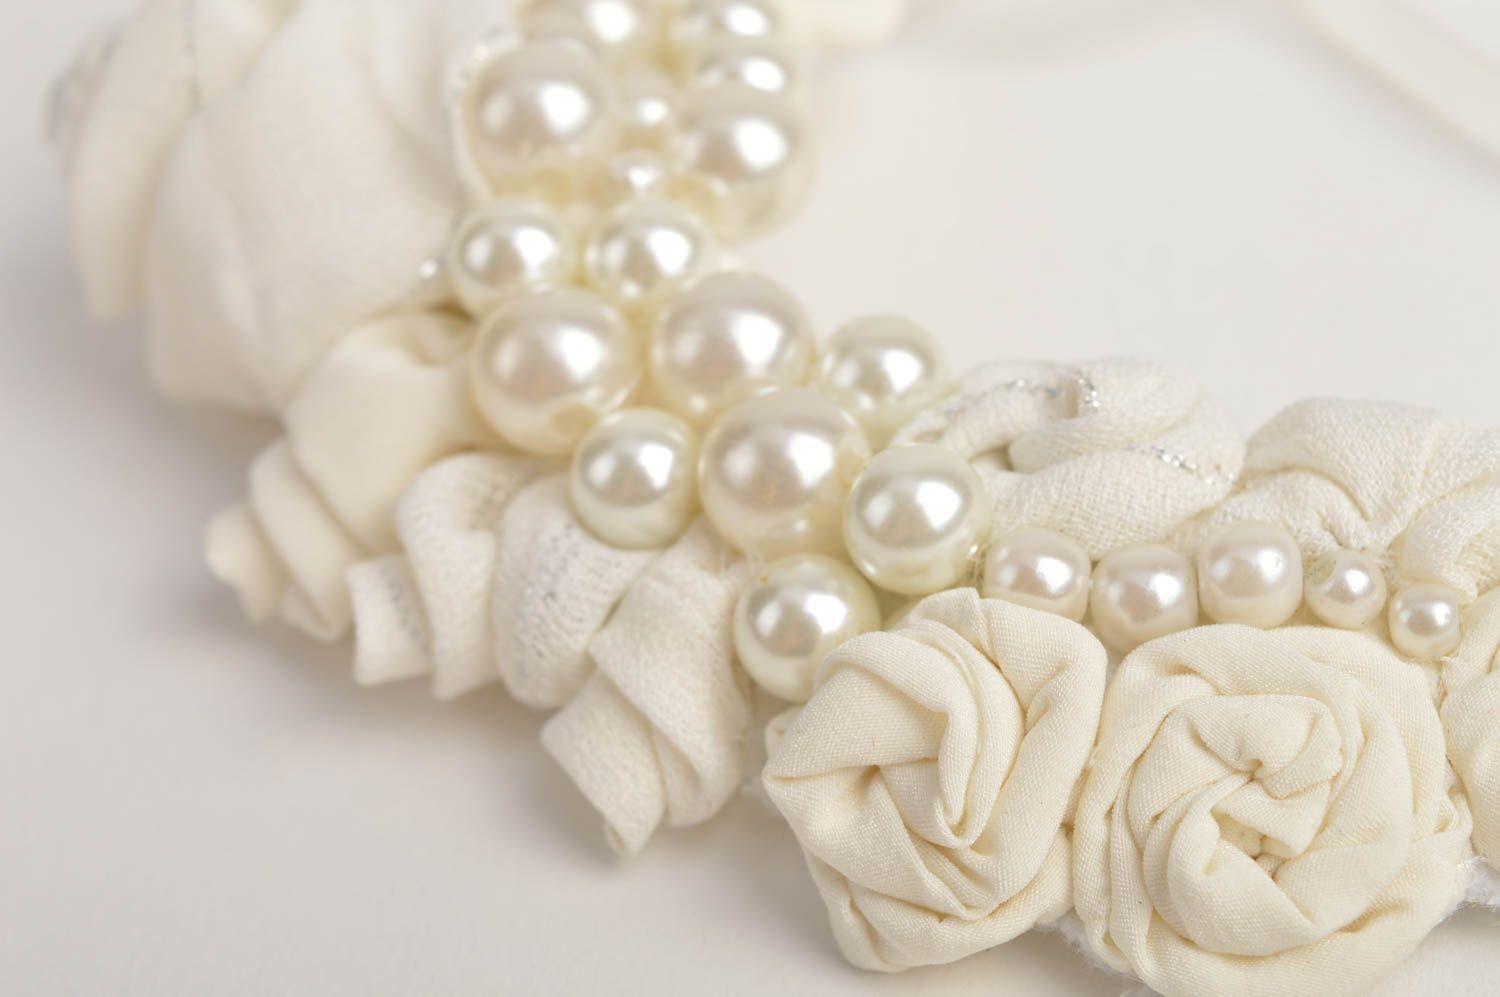 Handmade white festive jewelry stylish designer necklace elegant necklace photo 5